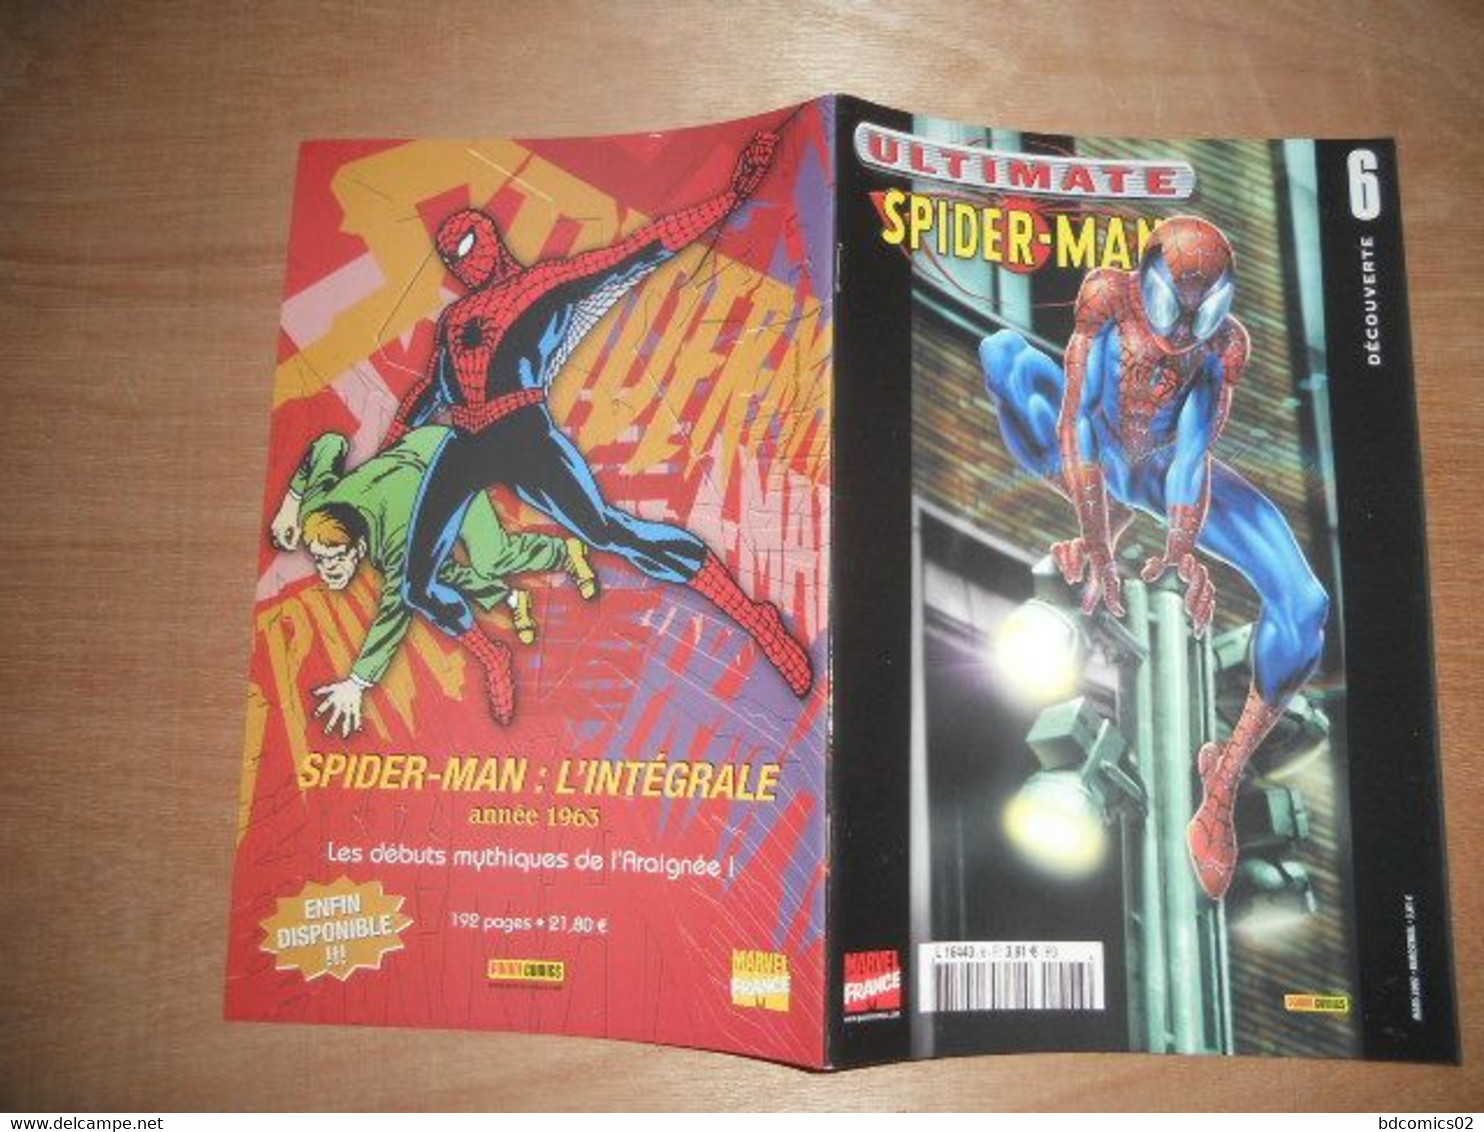 ULTIMATE SPIDER-MAN (1ère Série - V1) - N°6 Decouverte   Mars 2002 Marvel Panini TTBE - Spider-Man